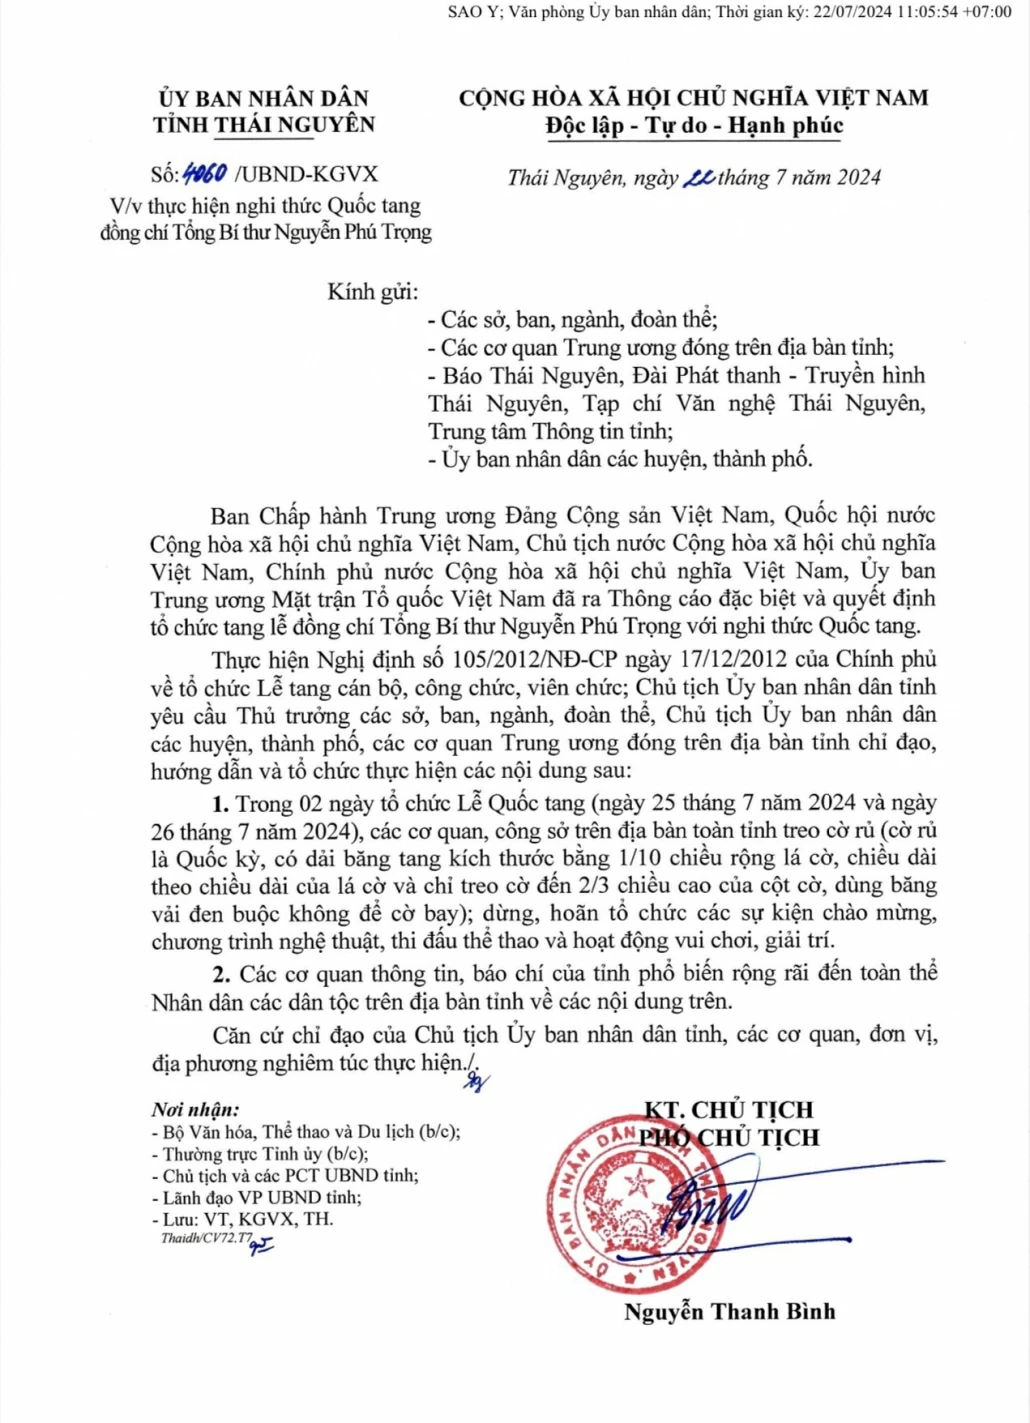 Công văn của UBND tỉnh về việc thực hiện nghi thức Quốc tang đồng chí Tổng Bí thư Nguyễn Phú Trọng